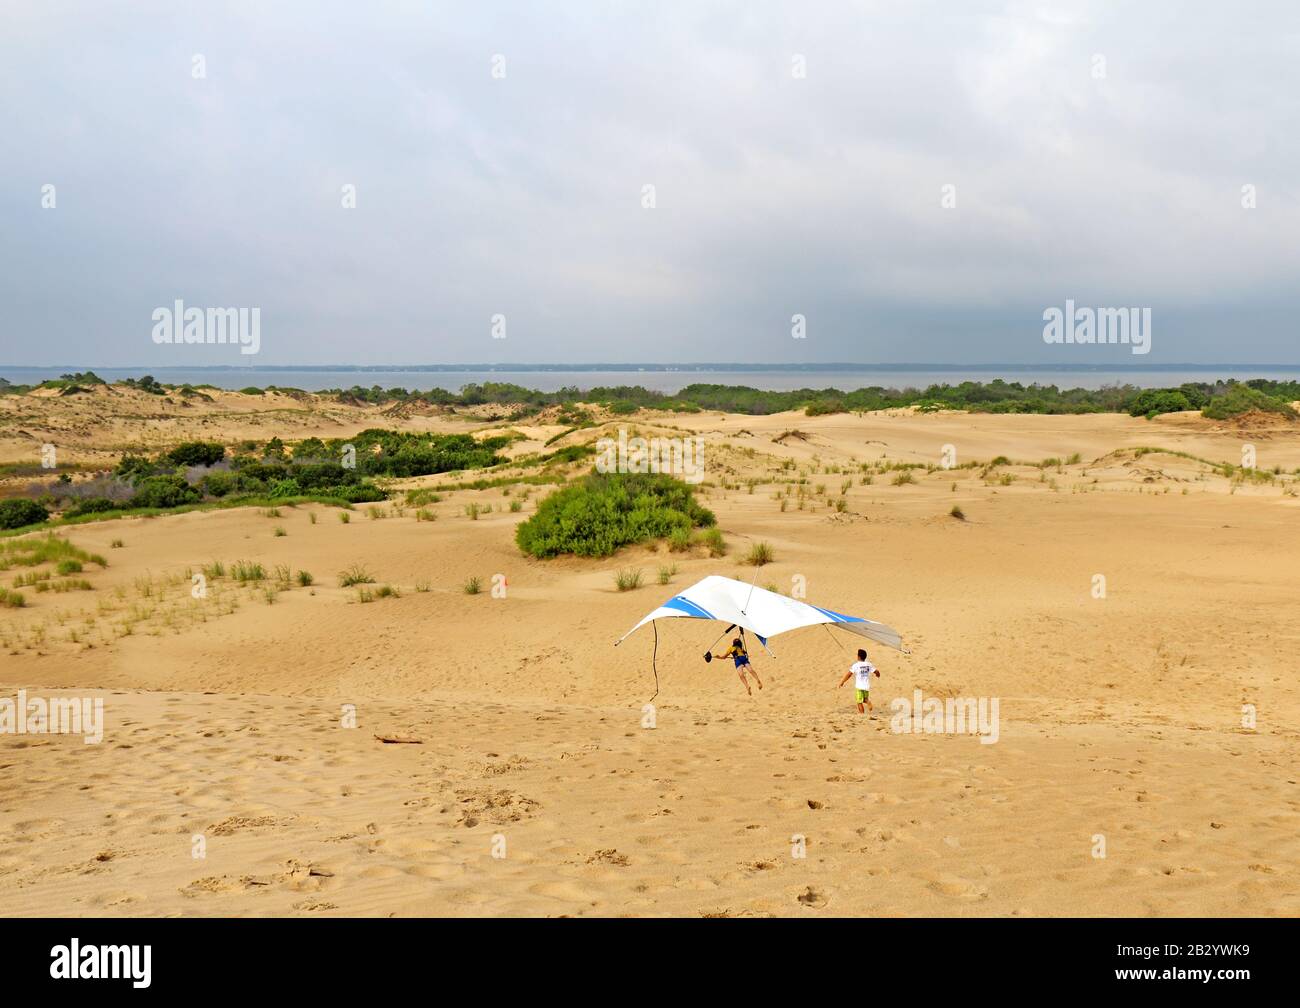 L'étudiant se prépare à atterrir avec un instructeur de l'école de voile Kitty Hawk Kites Hang sur les dunes de sable Banque D'Images